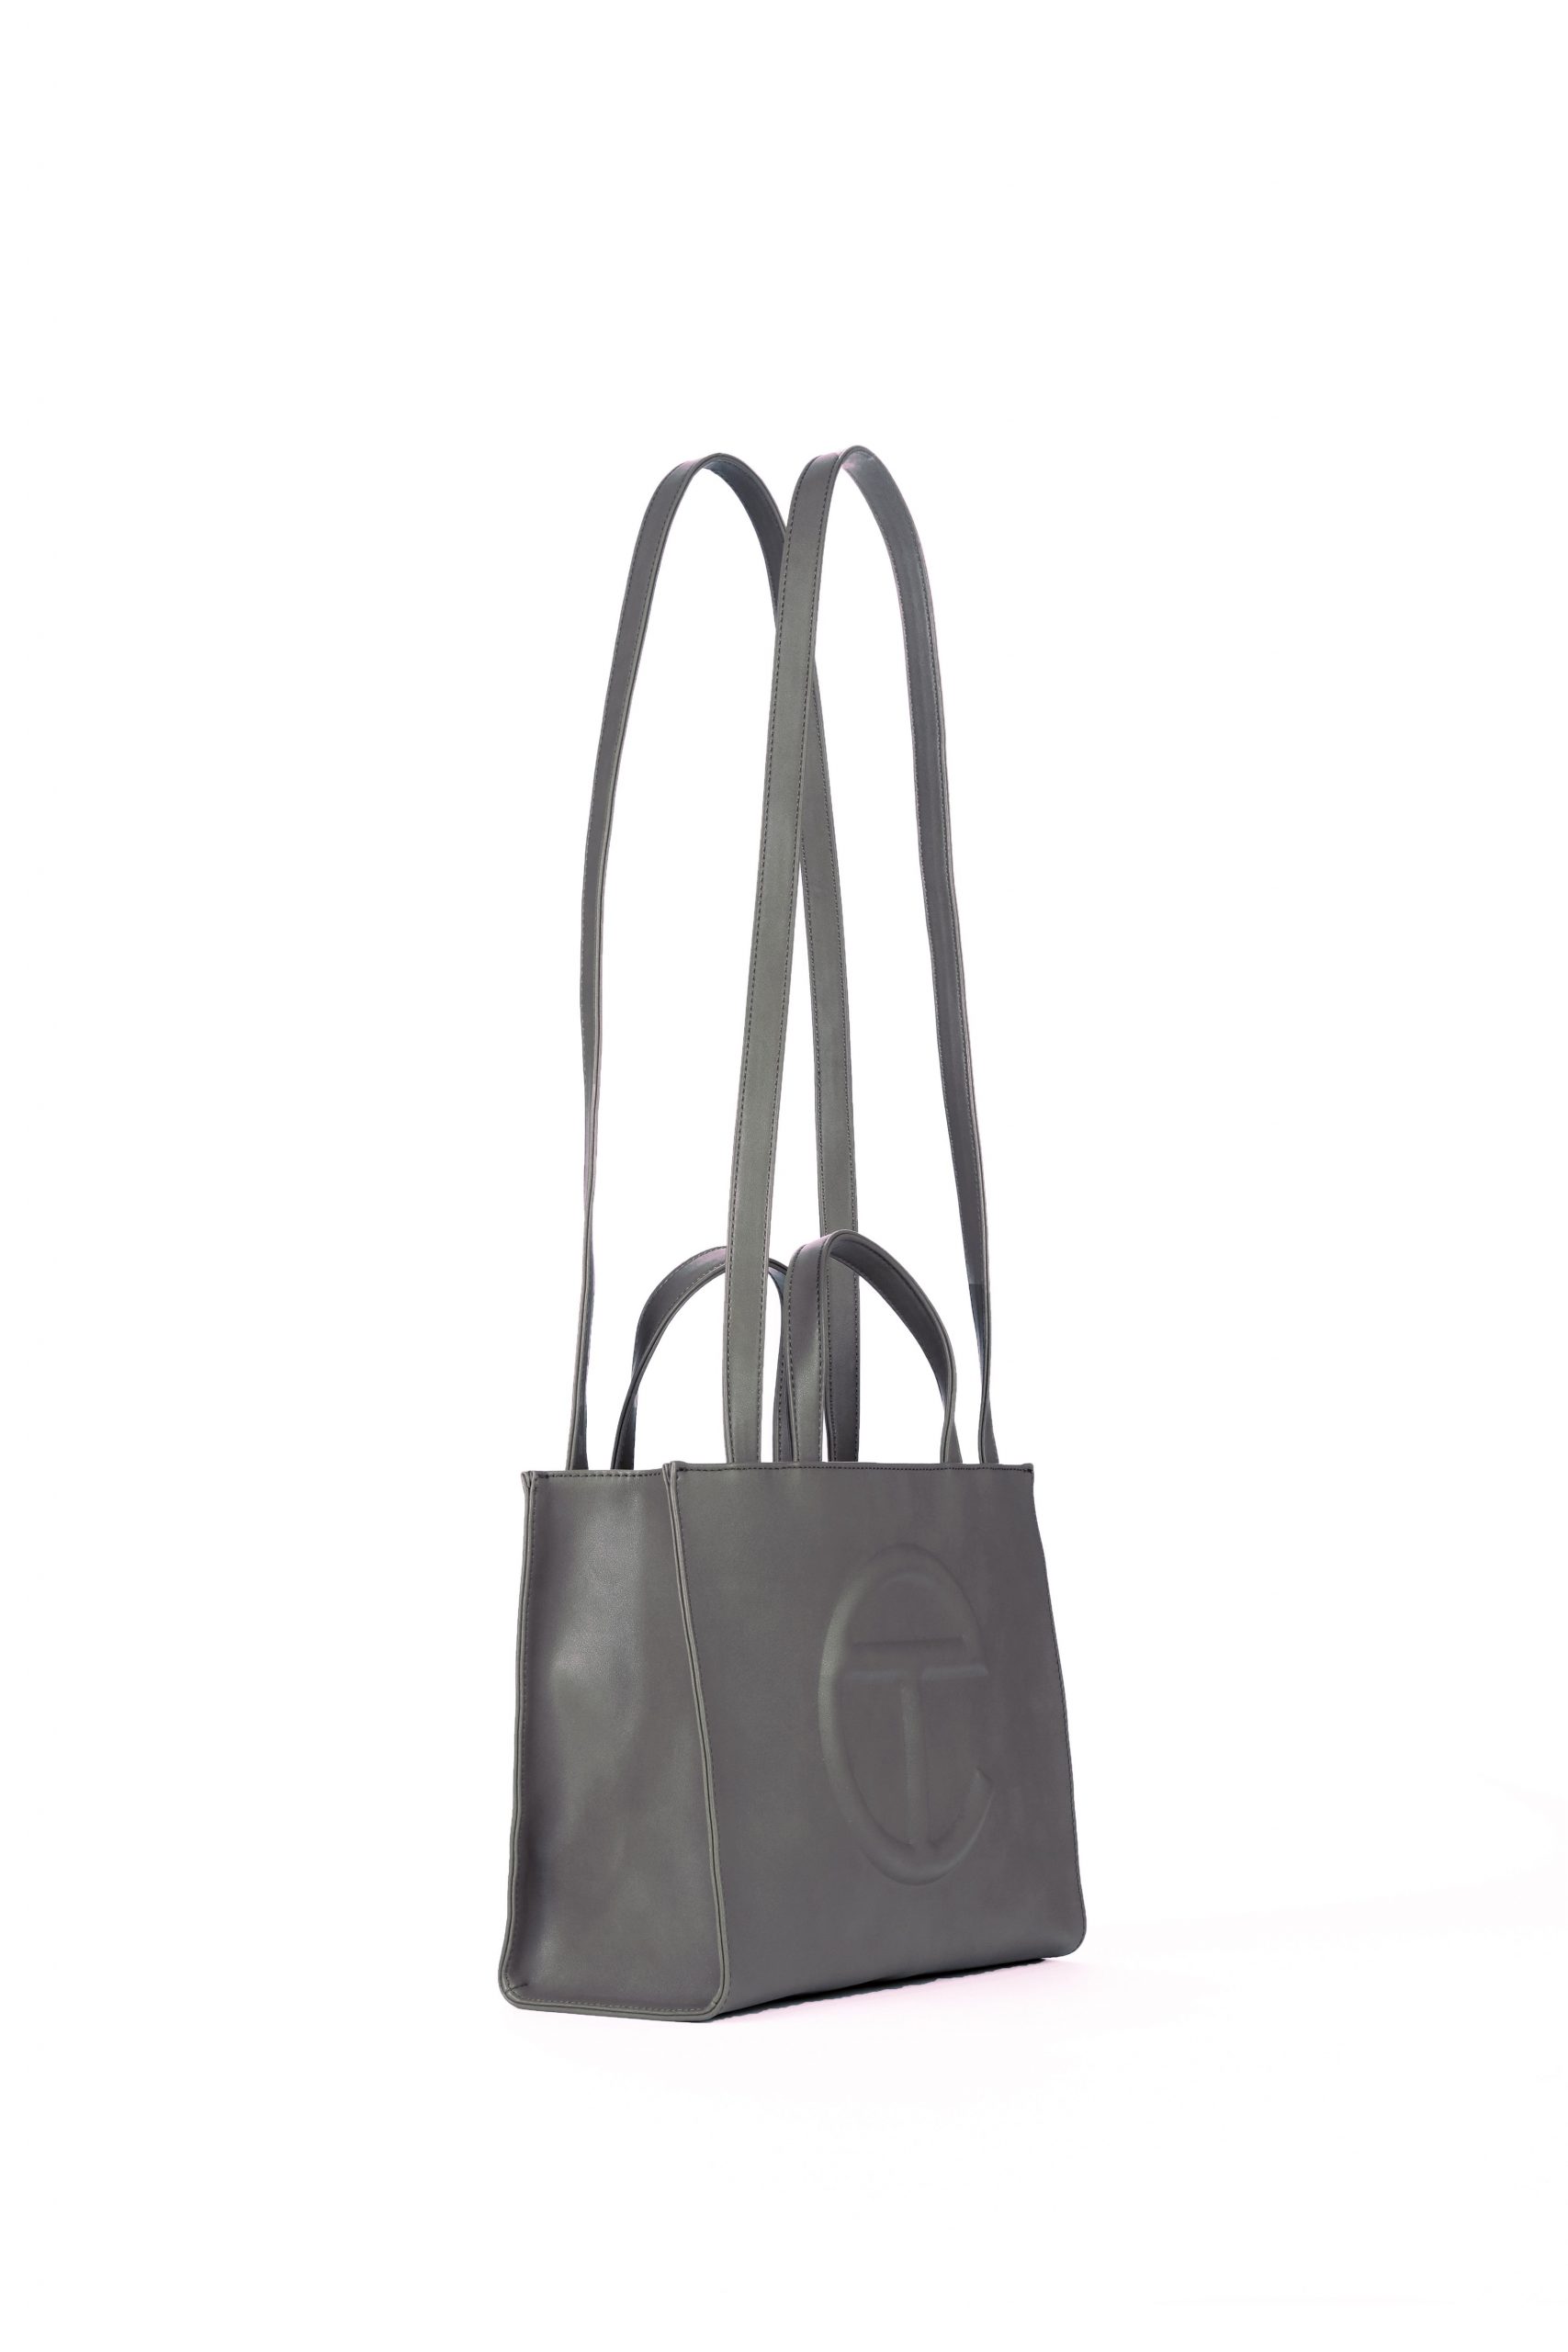 Medium Grey Shopping Bag